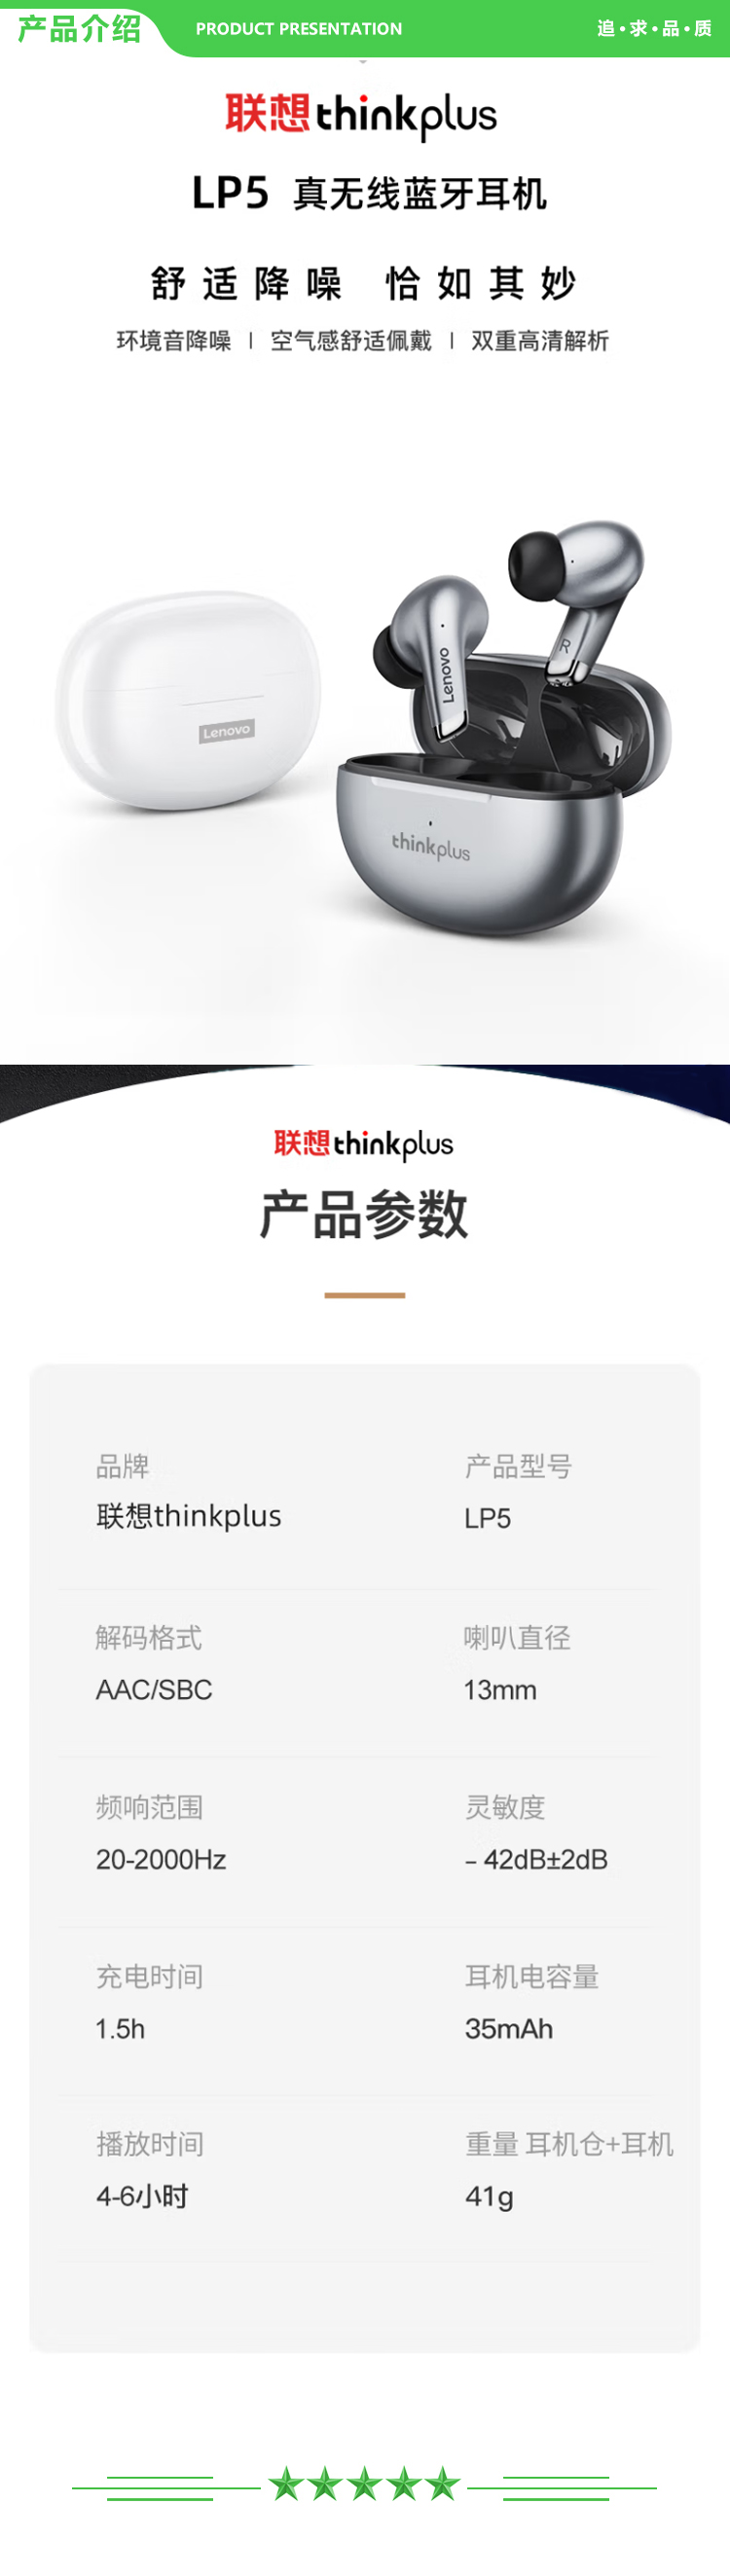 联想 Lenovo thinkplus LP5 灰色 真无线蓝牙耳机 入耳式跑步运动高清通话降噪音乐耳机通用苹果华为小米手机 .jpg